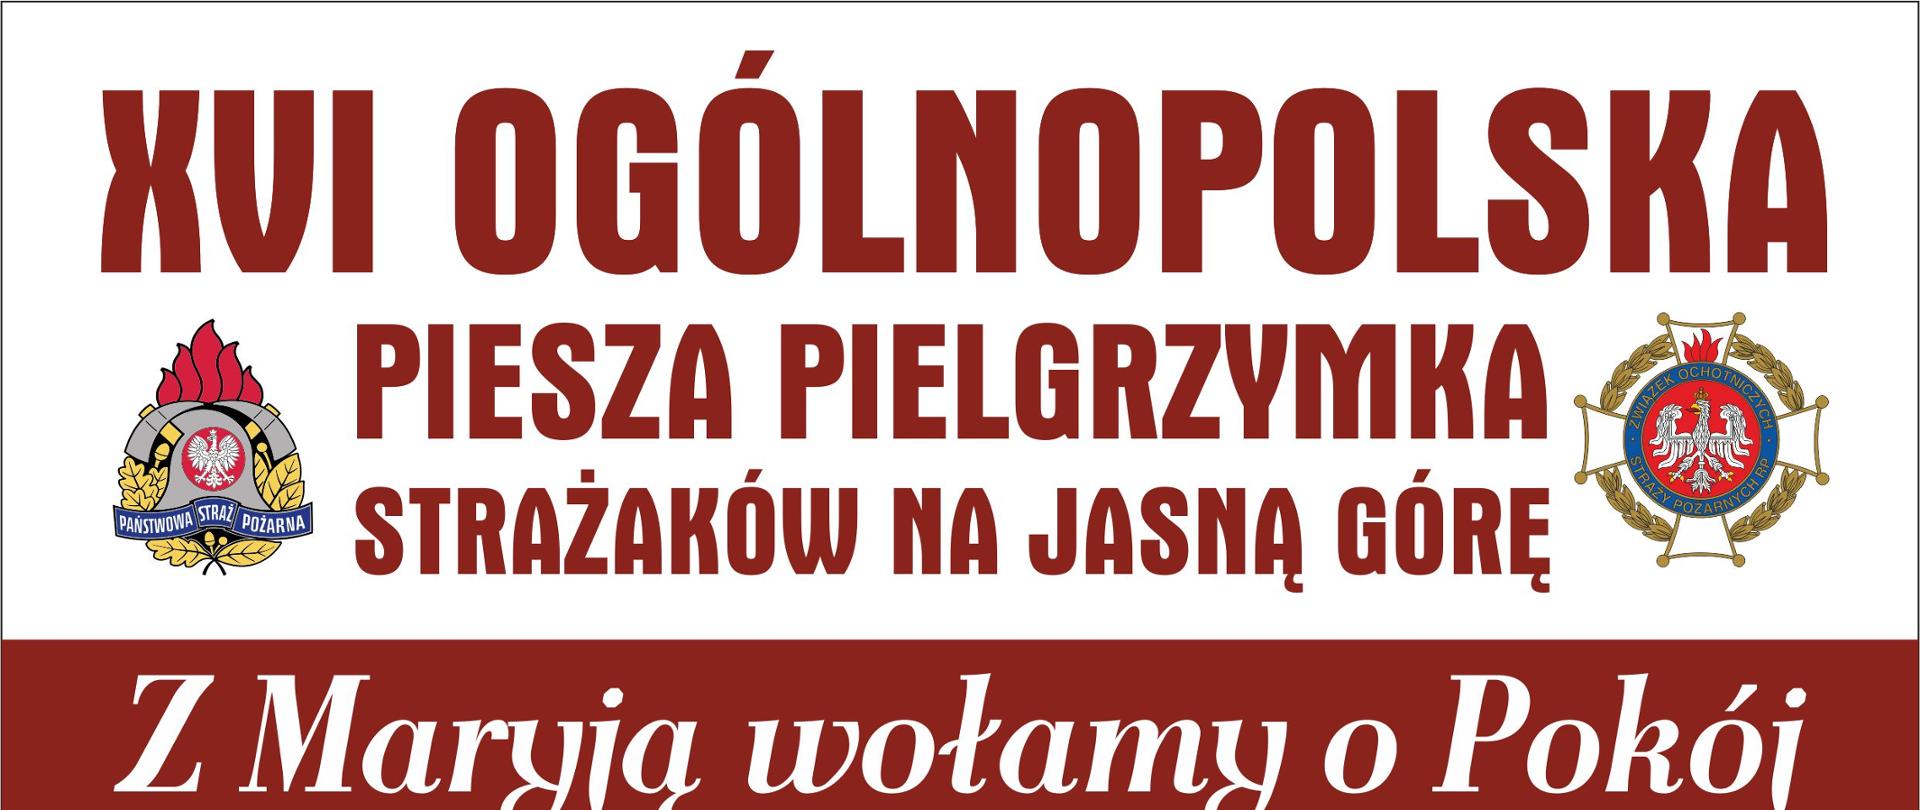 plakat reklamujący XVI Ogólnopolska Piesza Pielgrzymka Strażaków na Jasną Górę - na plakacie trasa pielgrzymki, 2 zdjęcia kościołów z warszawy i jasnej góry